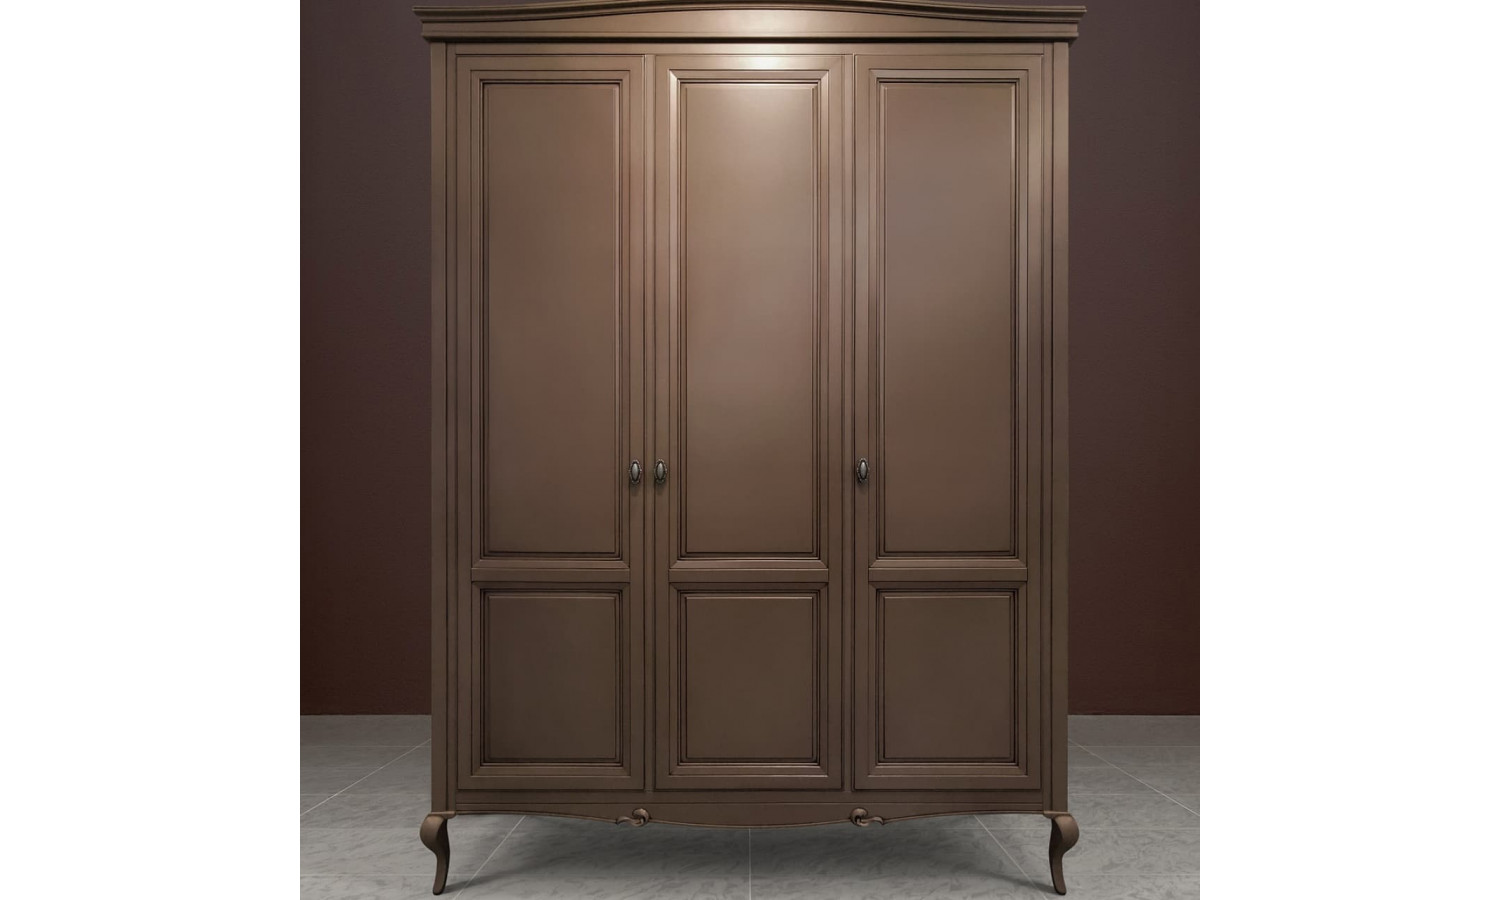 Шкаф 3 дверный Портофино, Кварц/Патина коричневая